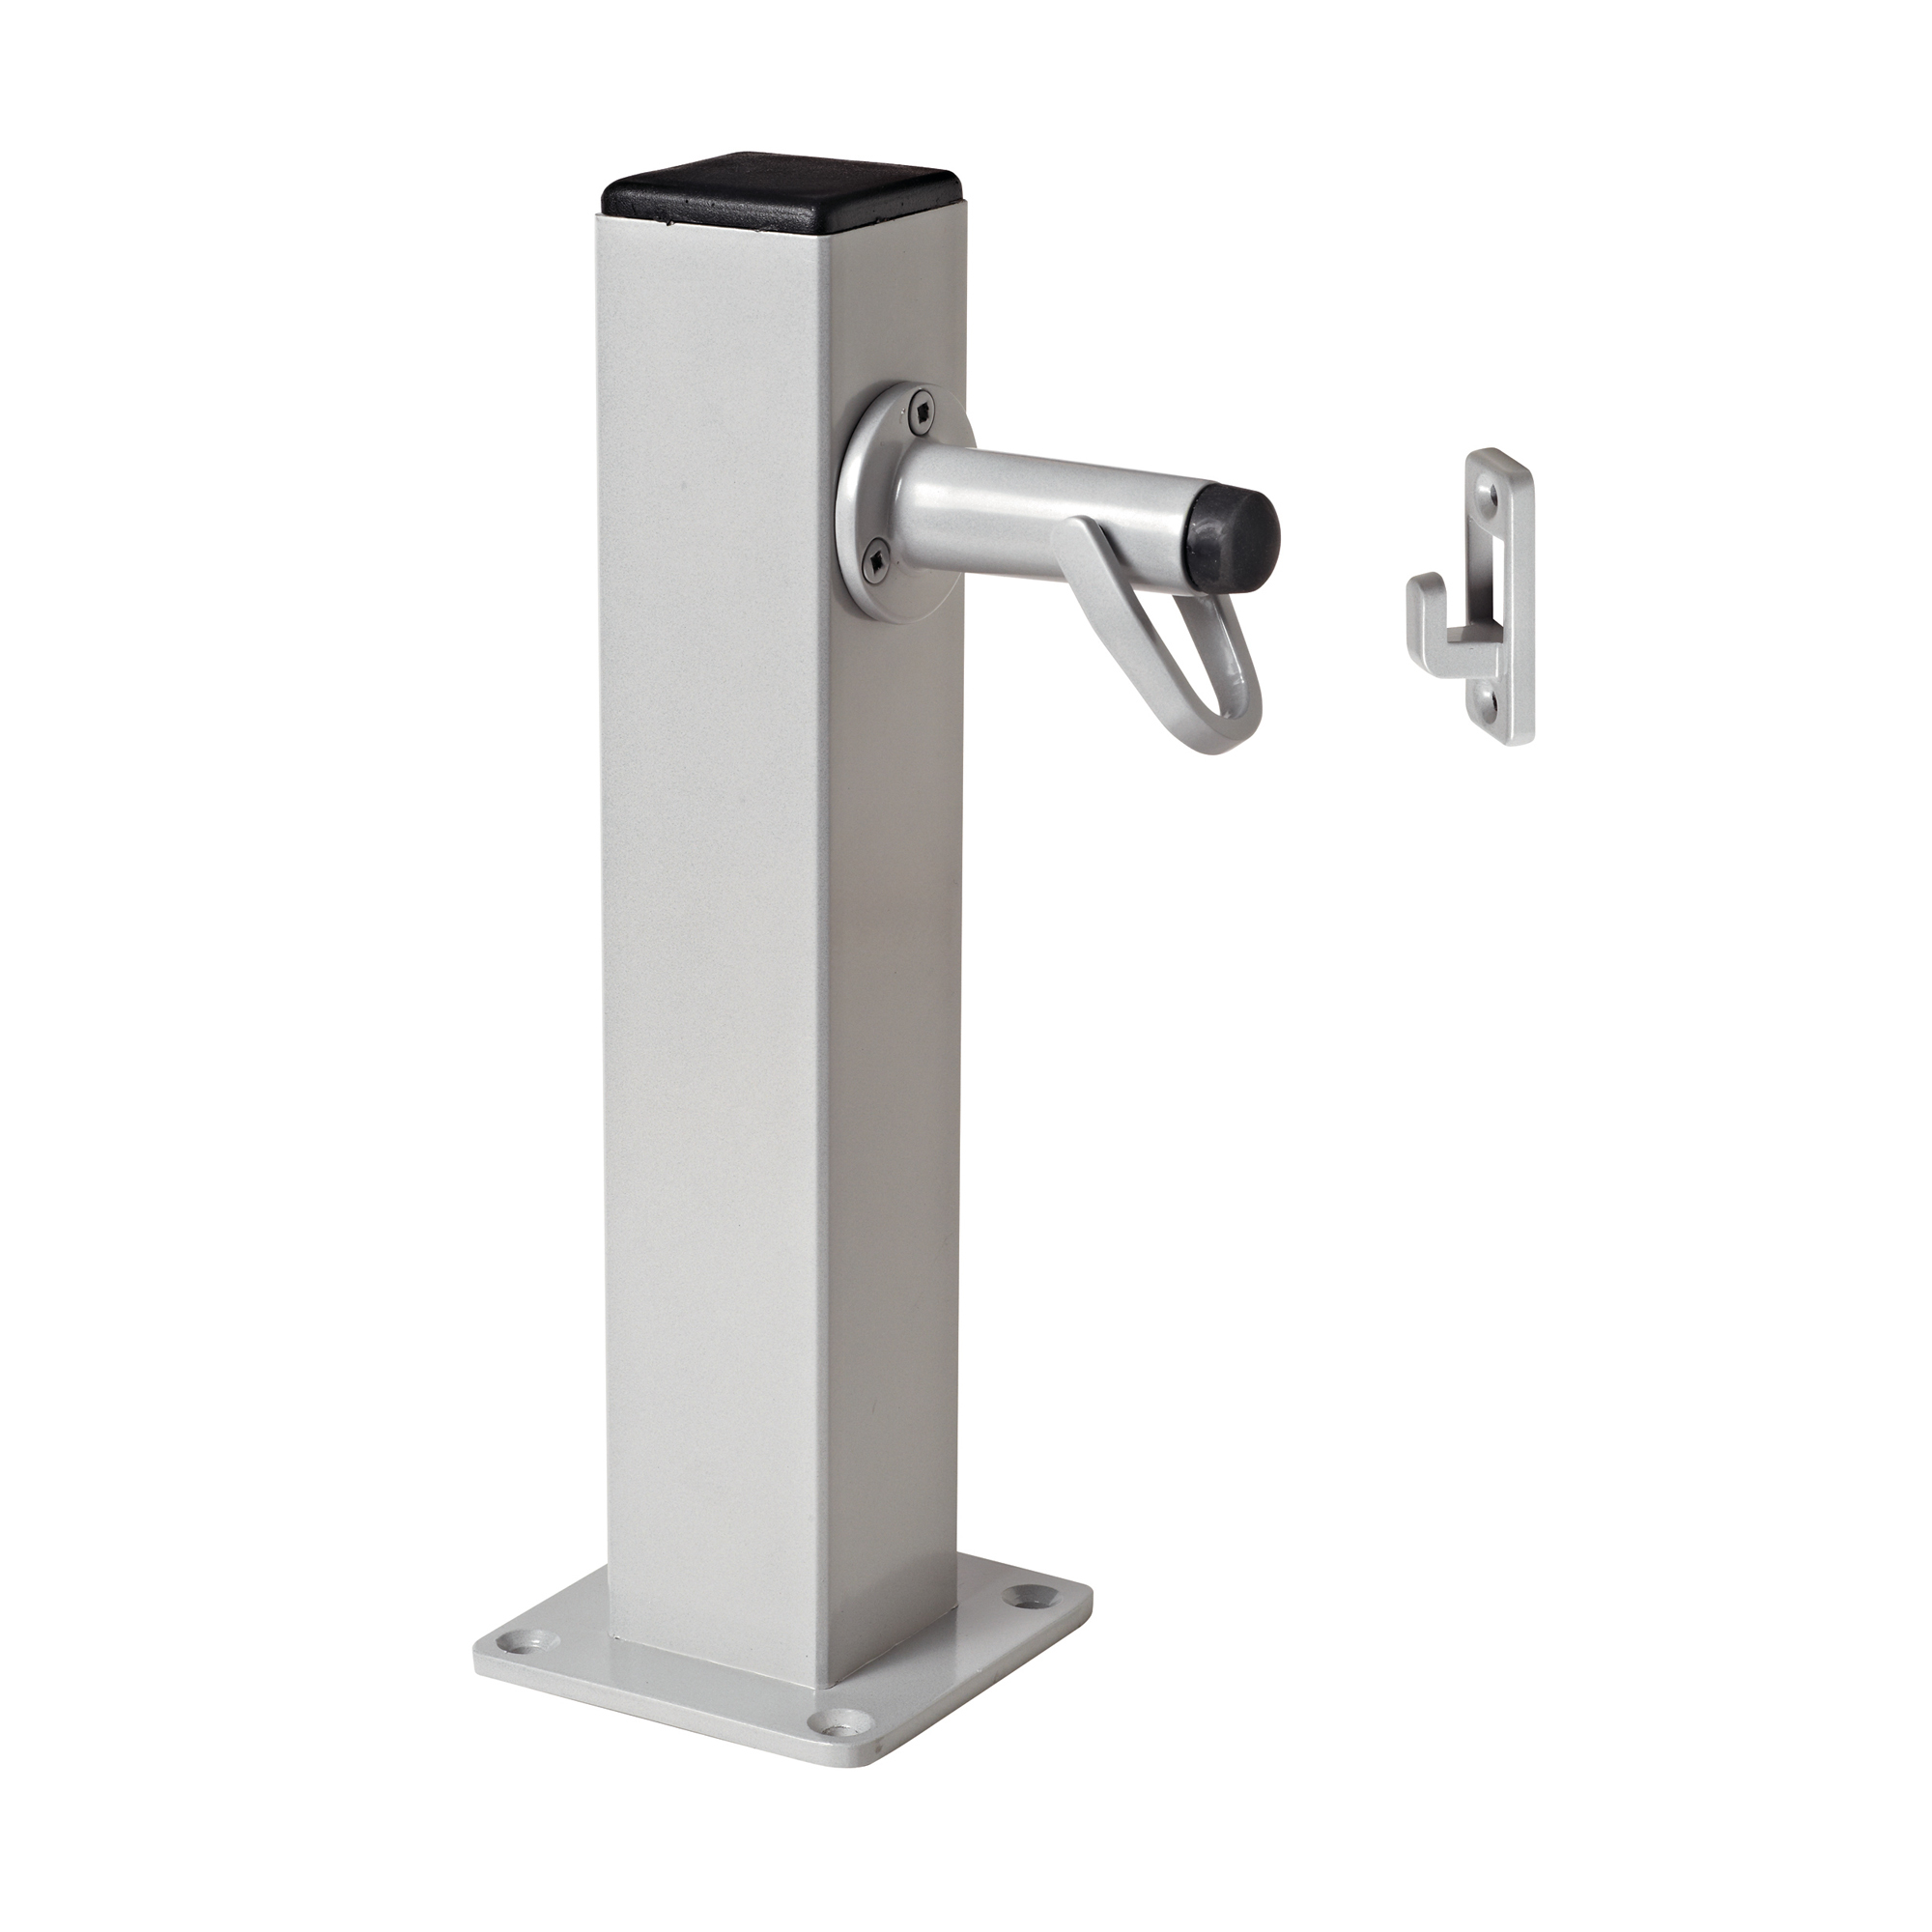 Pedestal Post Doorstop Holder (Inc 5258)